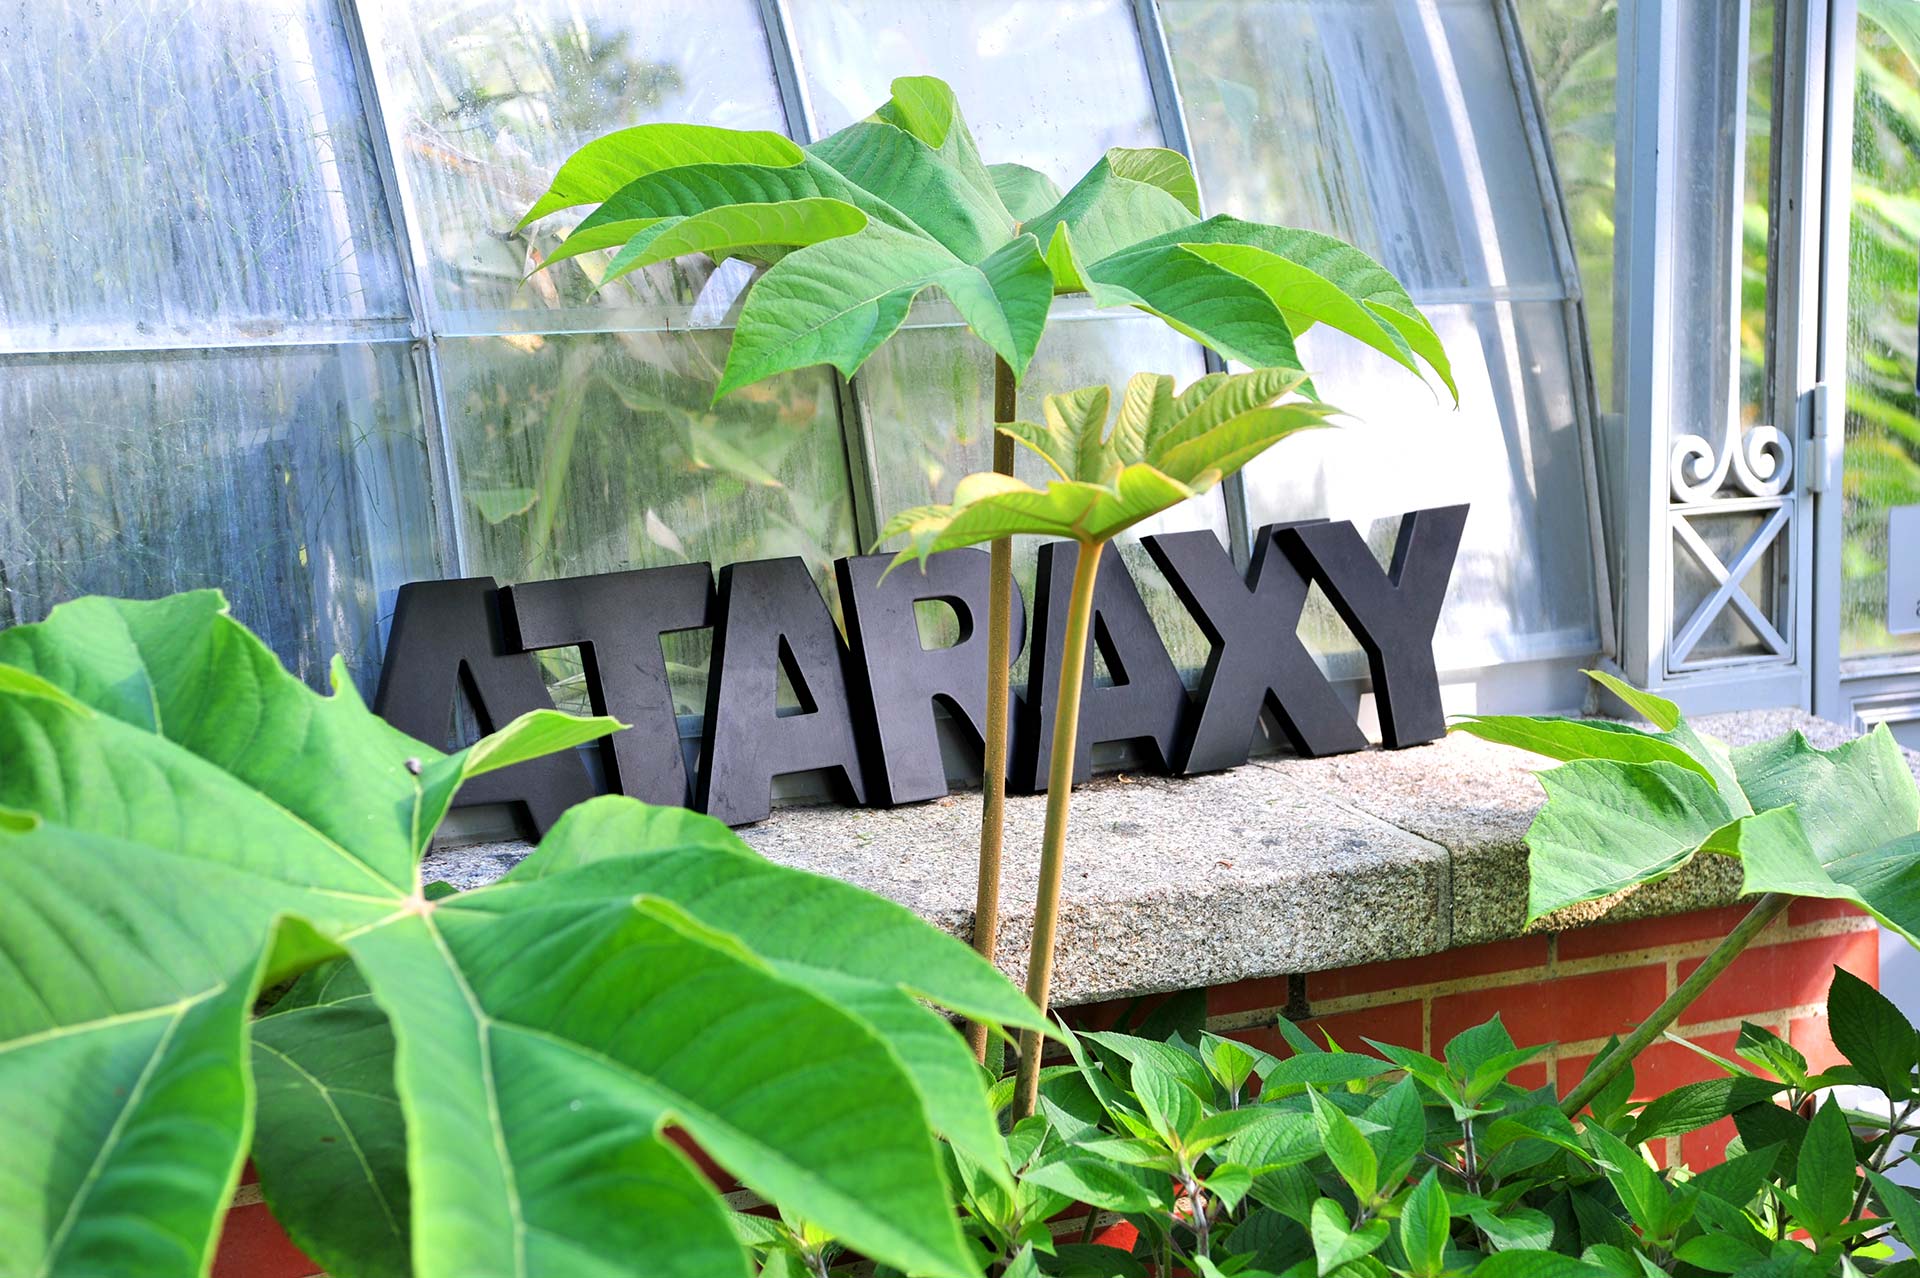 Logo Ataraxy dans un jardin entouré de feuilles